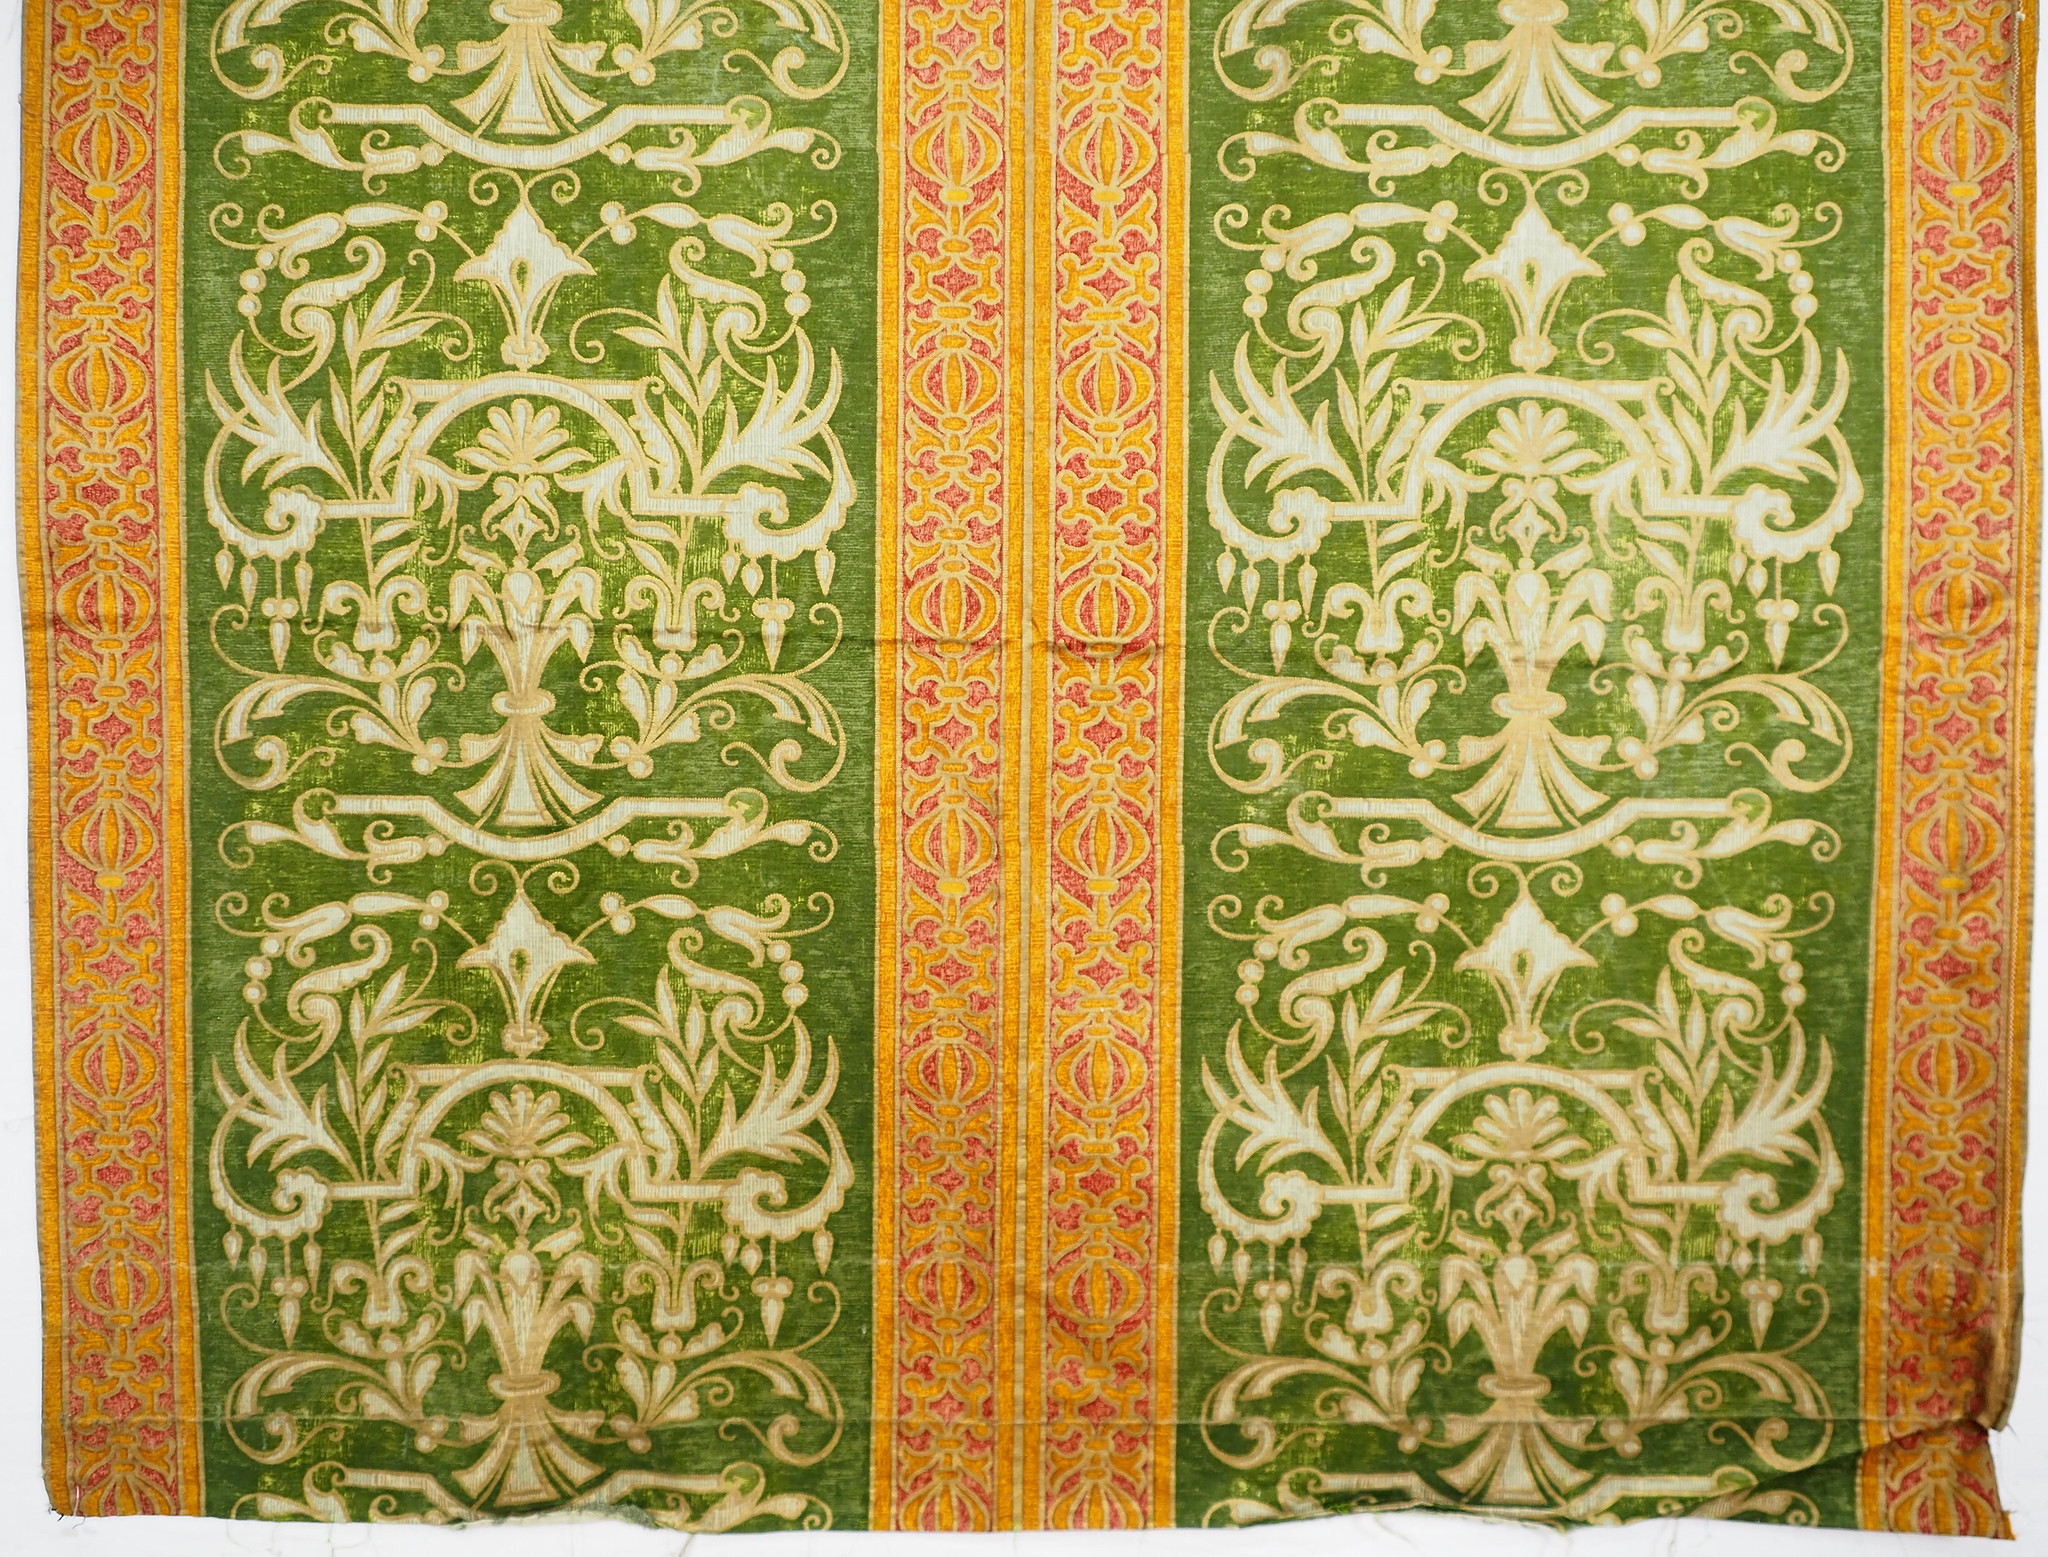 210x115 cmVintage Antique Biedermeier Velvet Stripe Fabric Russia Jacquard Velvet Antique Damask